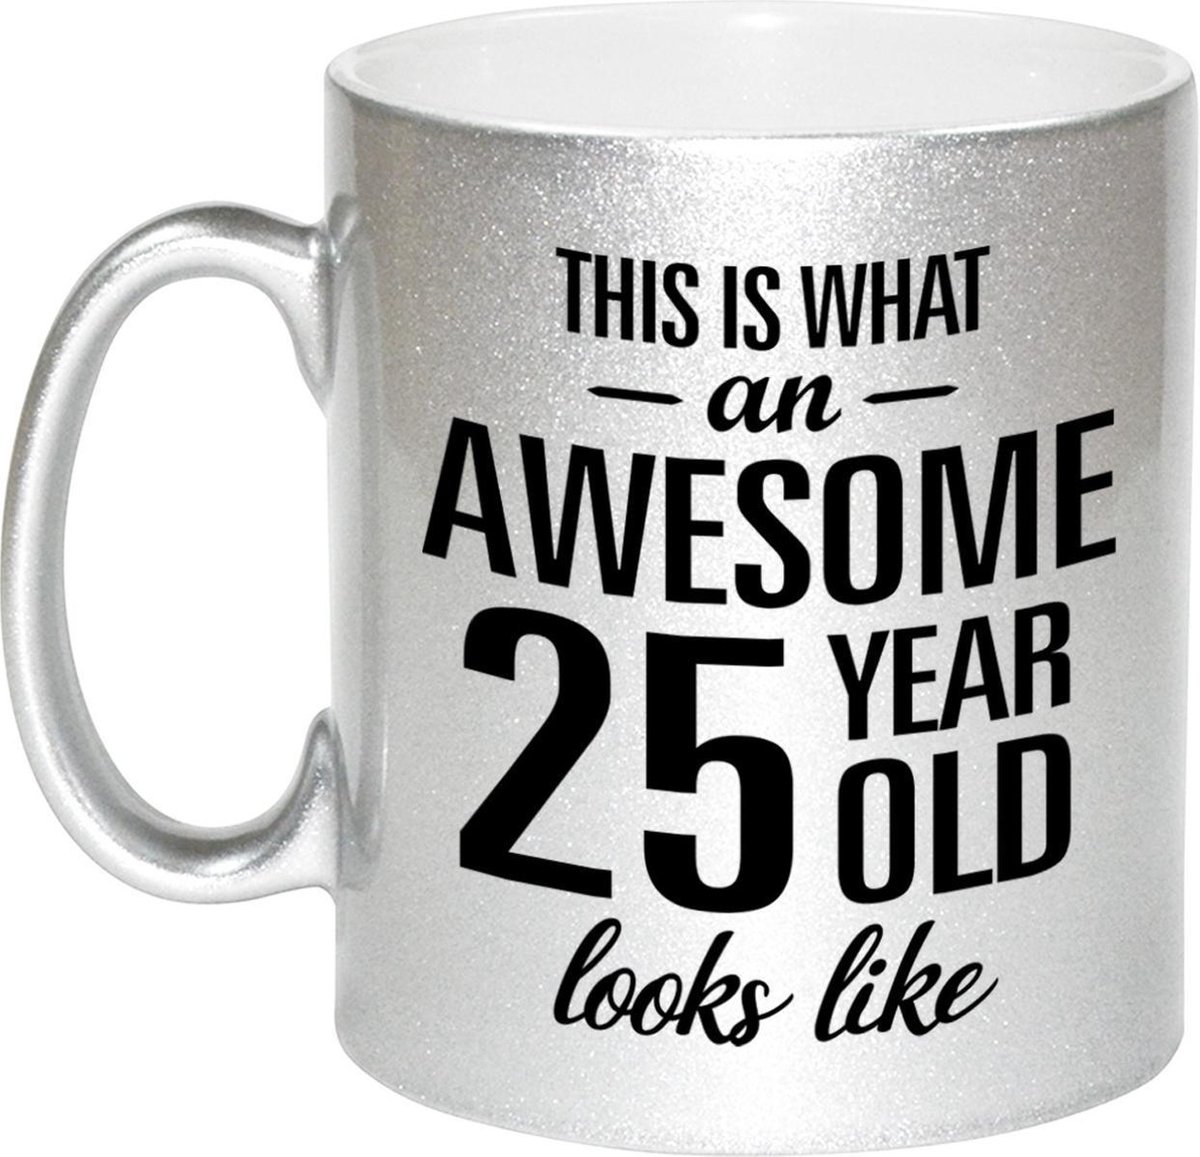 This is what an awesome 25 year old looks like cadeau zilveren mok / beker - 330 ml - verjaardag - kado koffiemok / theebeker